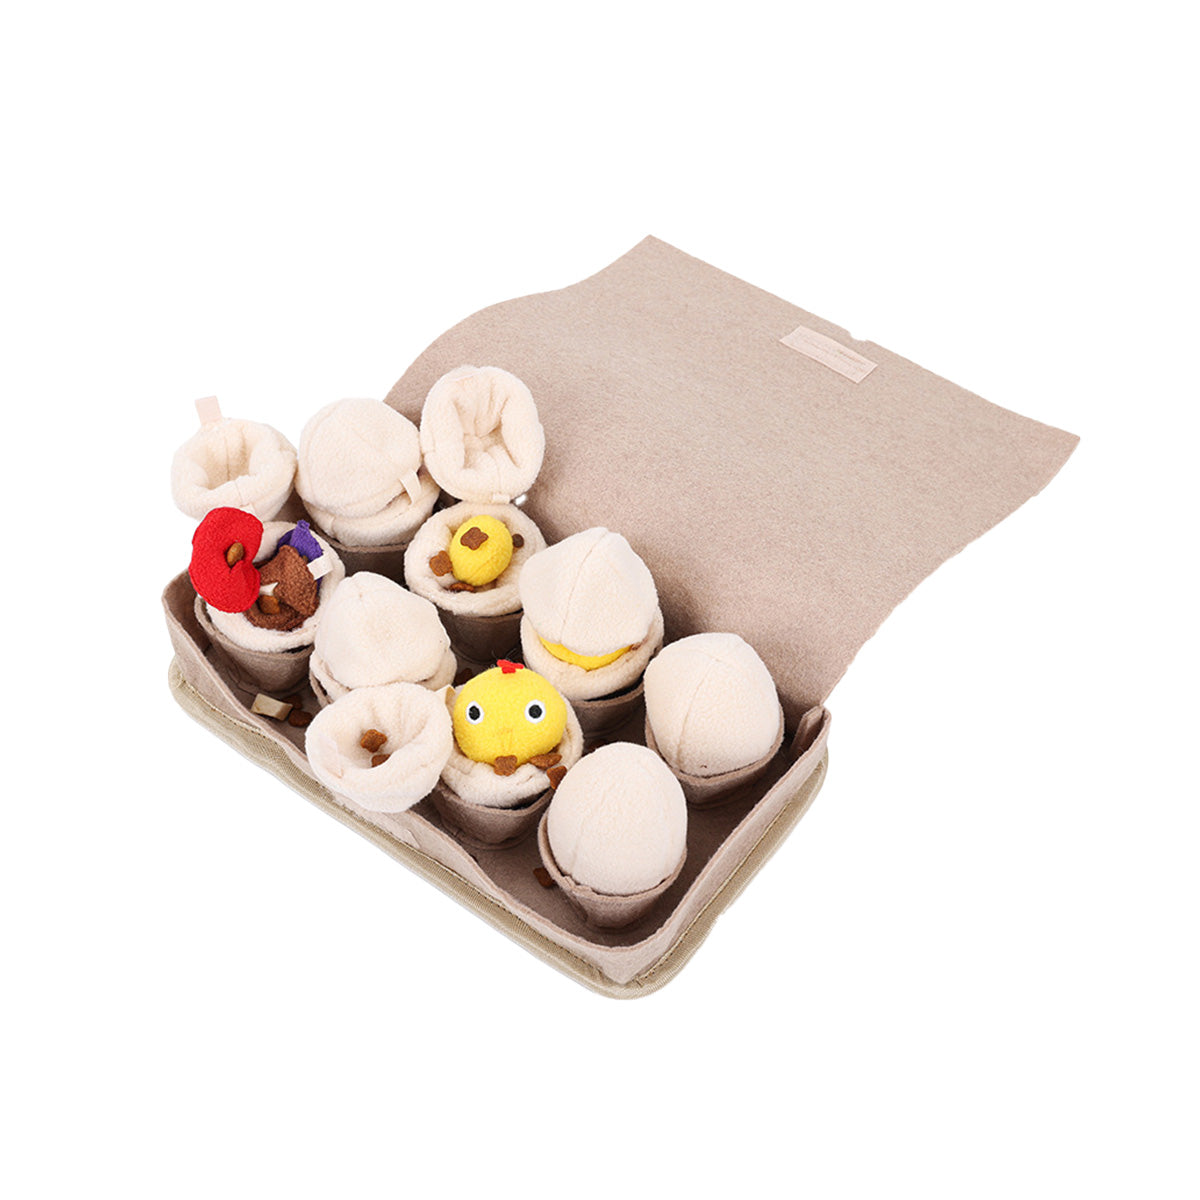 DogLemi多樂米 雞蛋盒嗅聞玩具 藏食玩具